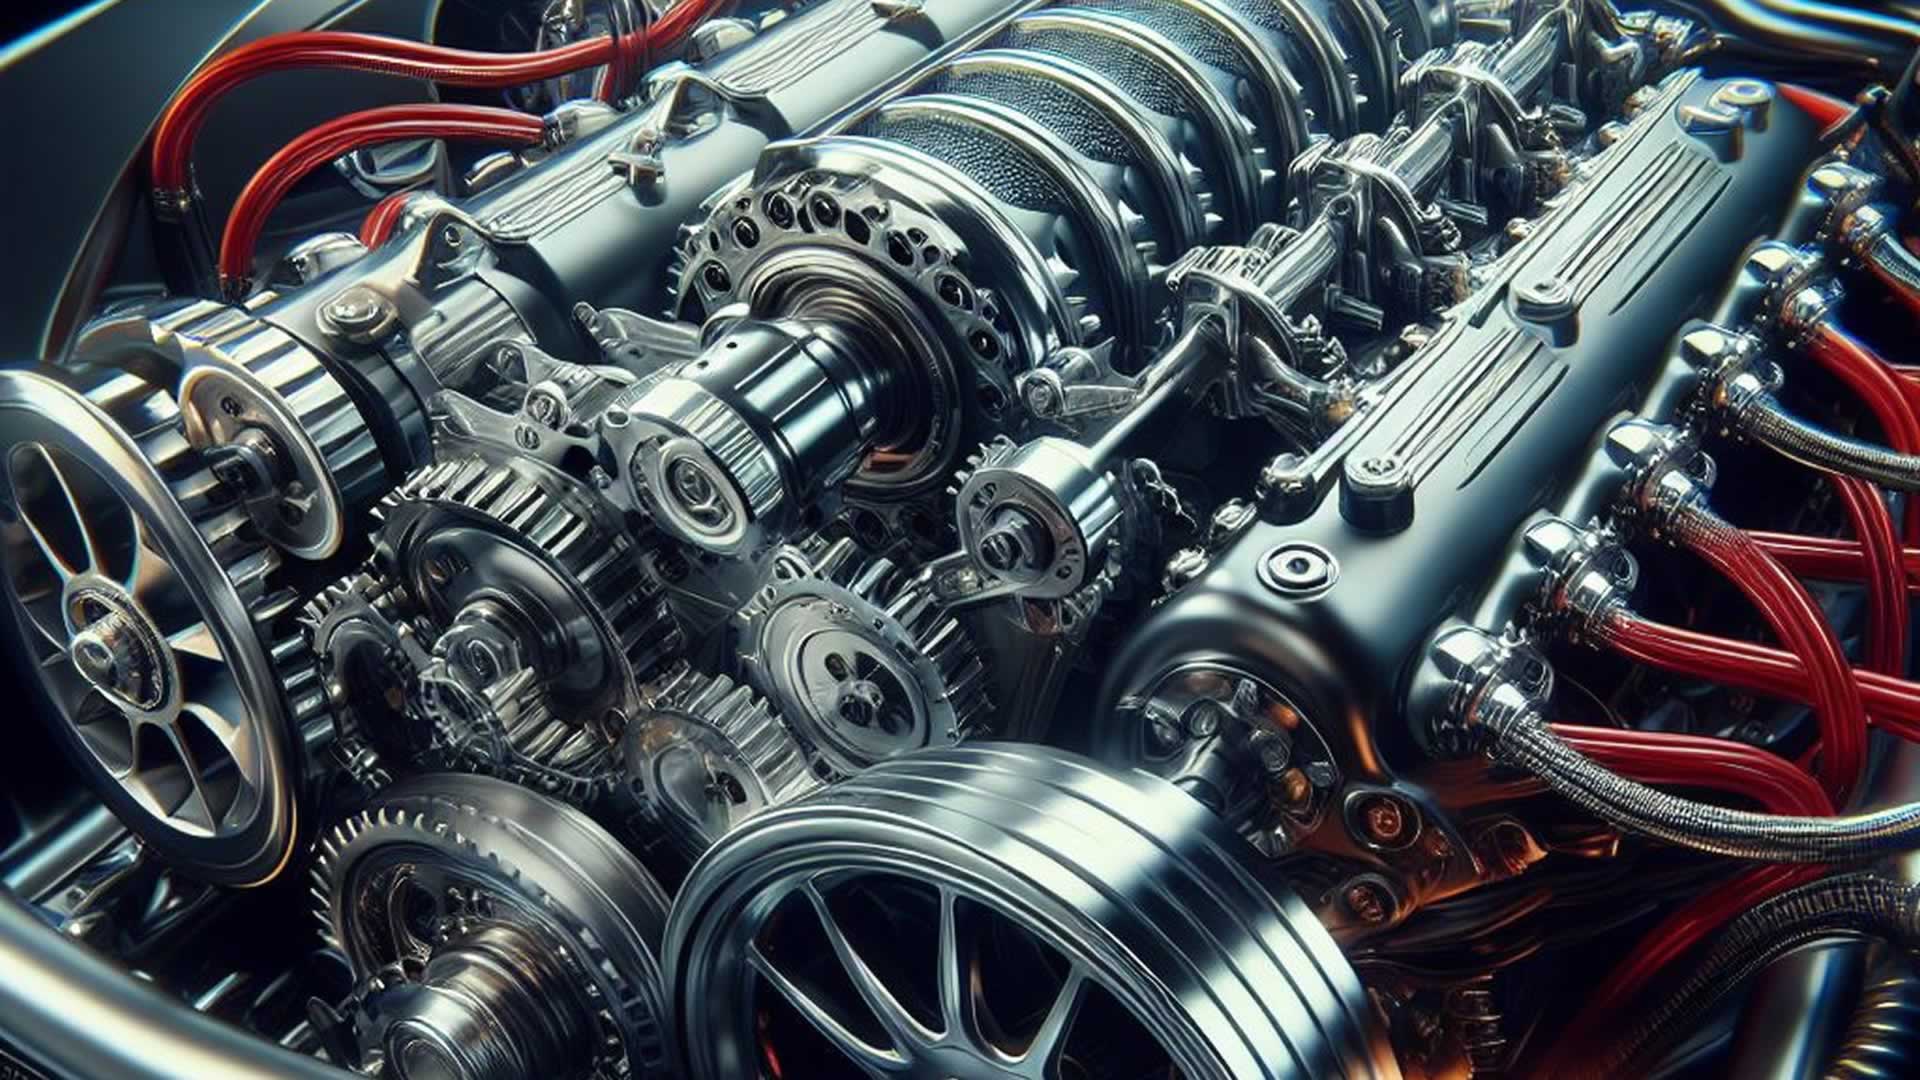 Euro5 Motor - Was ist das?